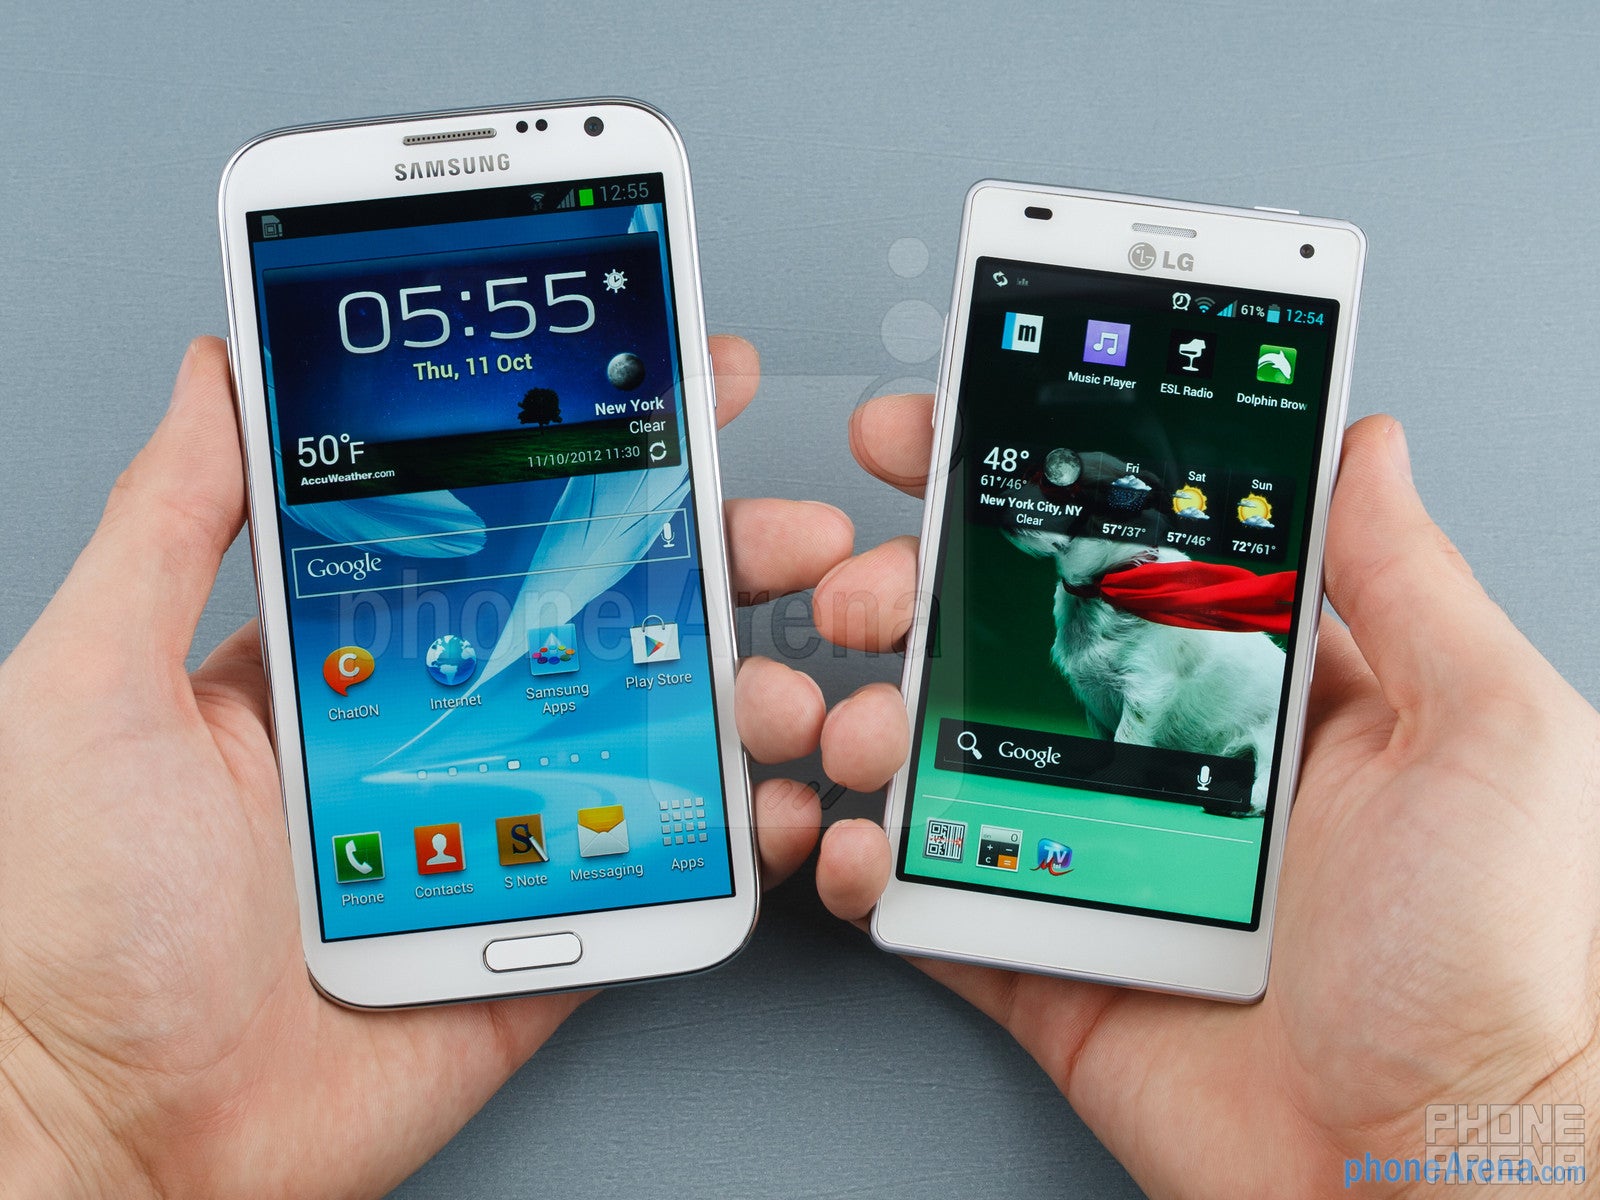 Samsung Galaxy Note II vs LG Optimus 4X HD